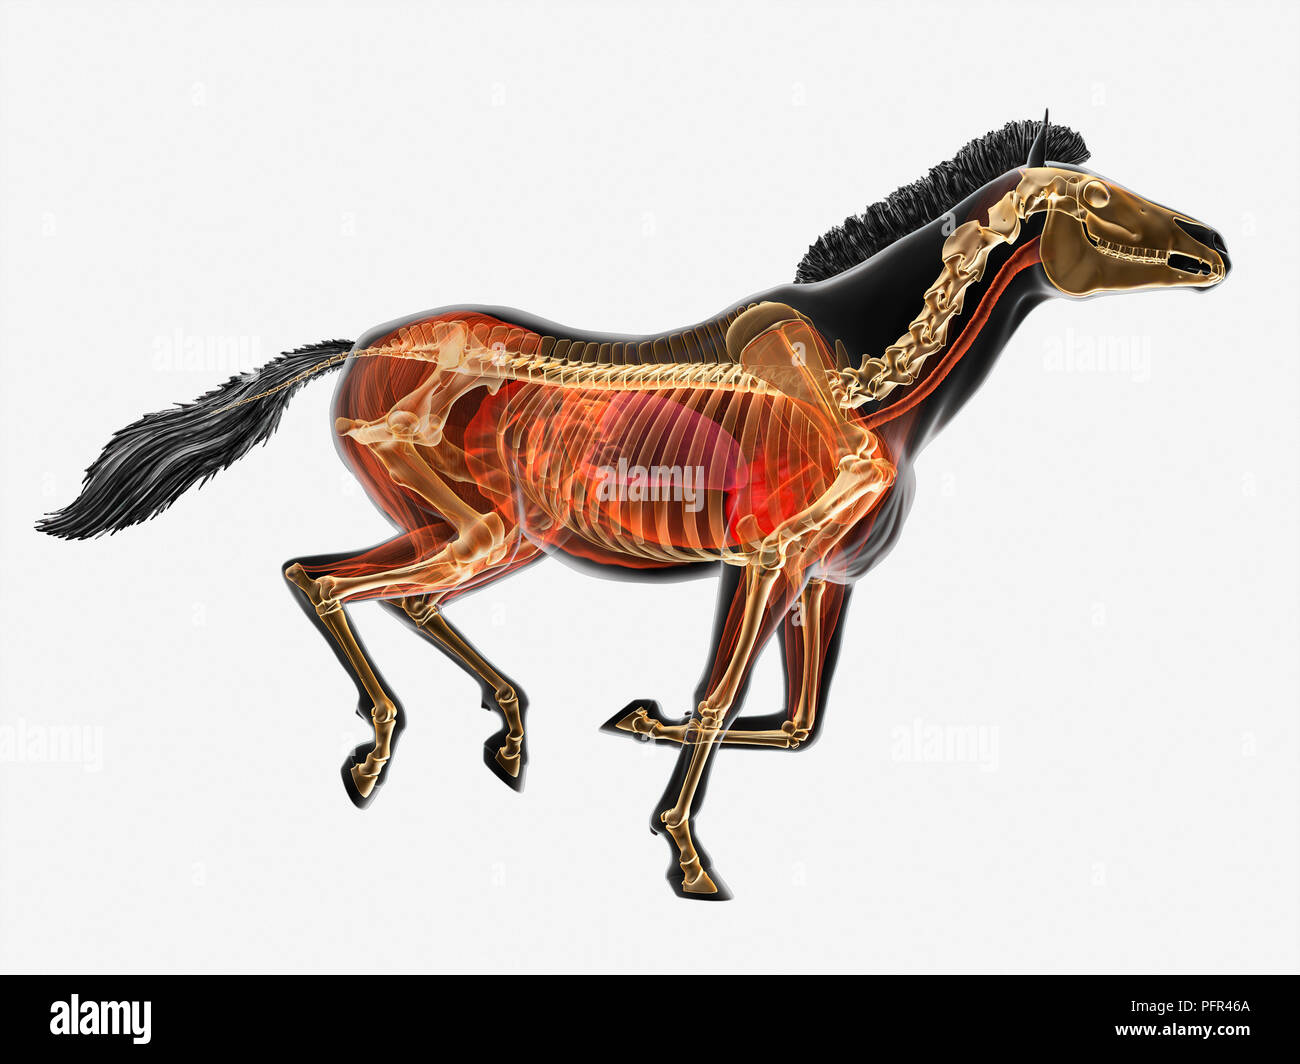 Illustration, anatomy of Przewalski's horse (Equus ferus przewalskii) Stock Photo